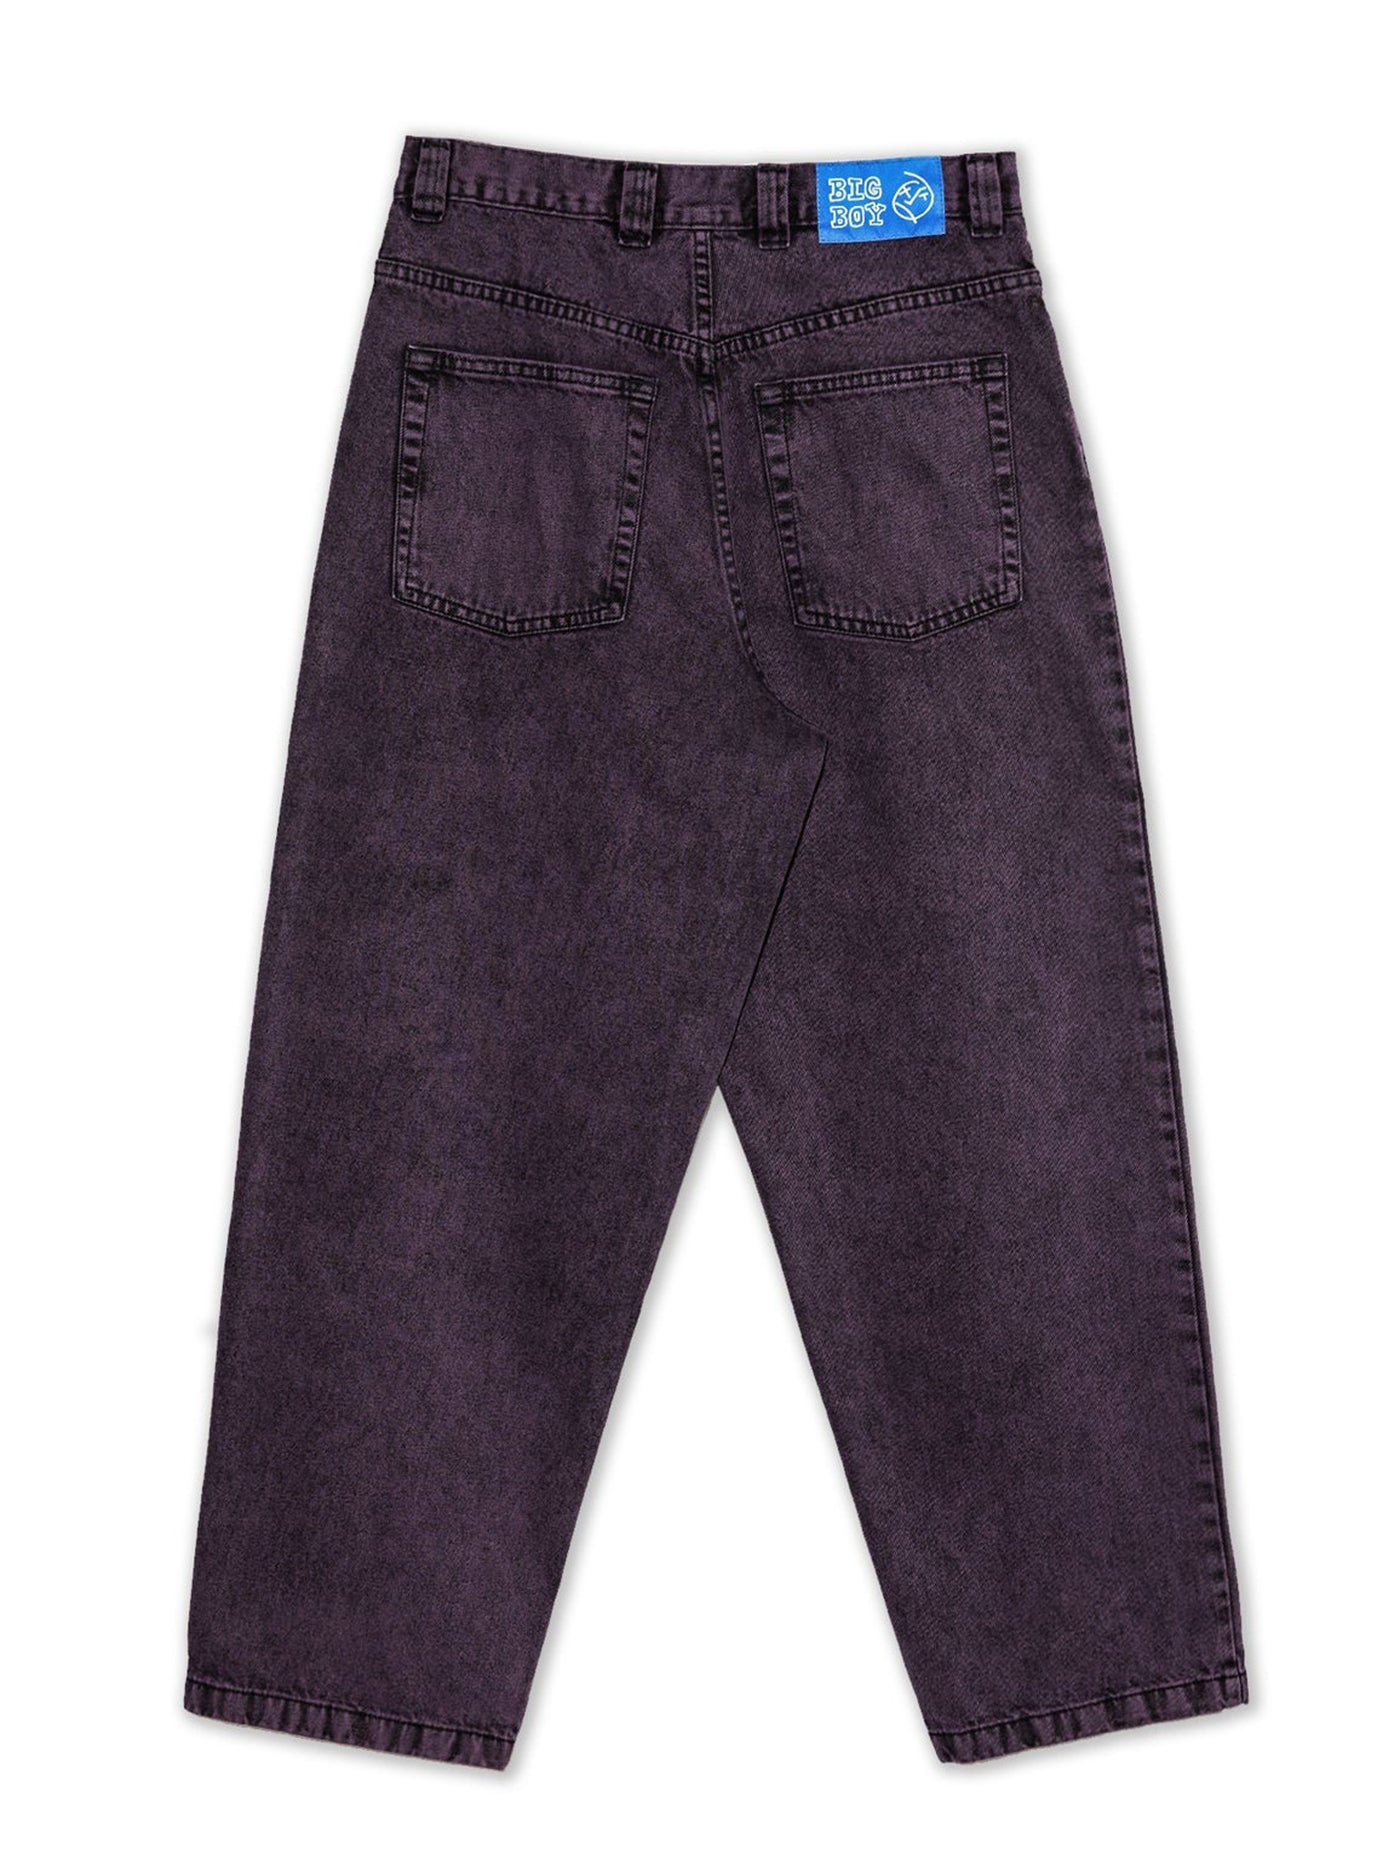 ダブルタップスPOLAR skate bigboy jeans purple black L